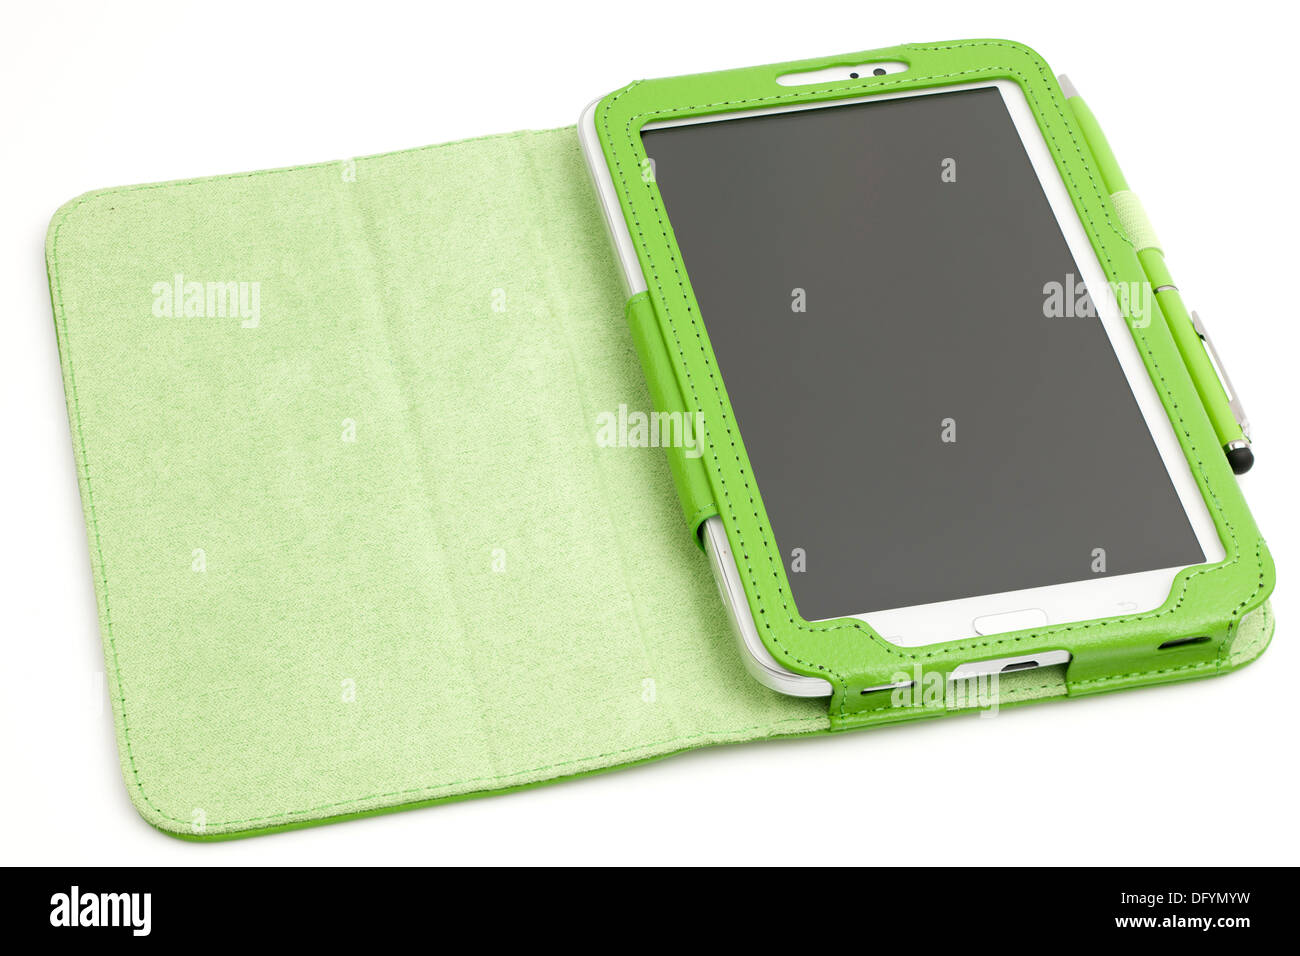 Samsung Galaxy 7 Tab 3-Zoll-Tablet mit Schutzhülle und Stift Stockfoto